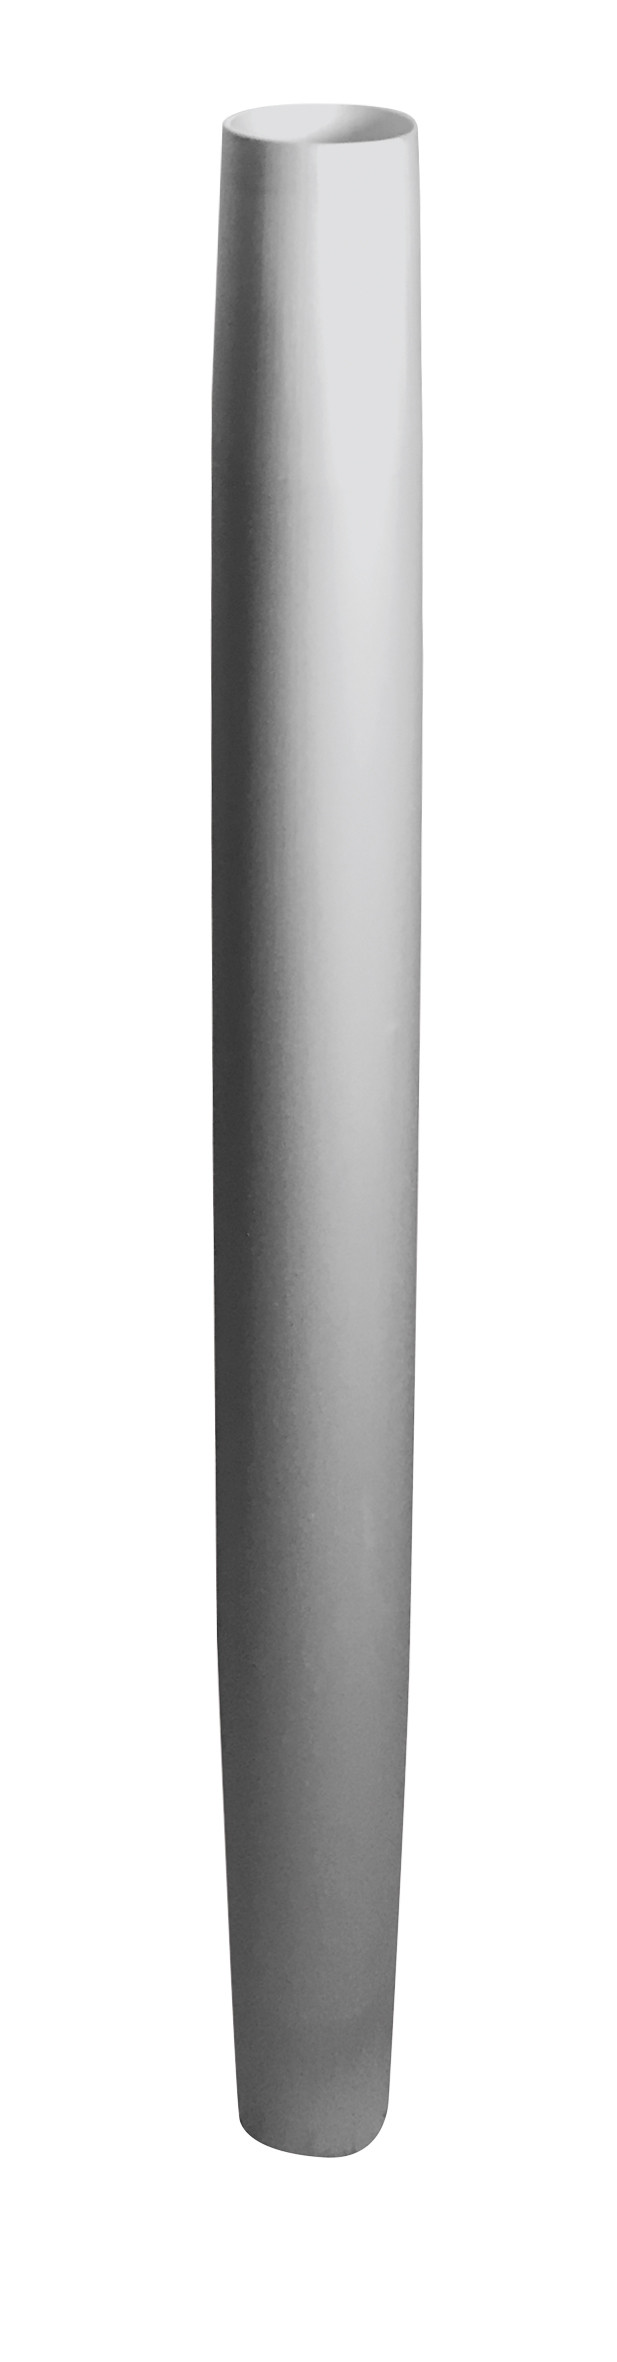 Aluminiumrohr 70cm (2x konisch) Ø 60mm